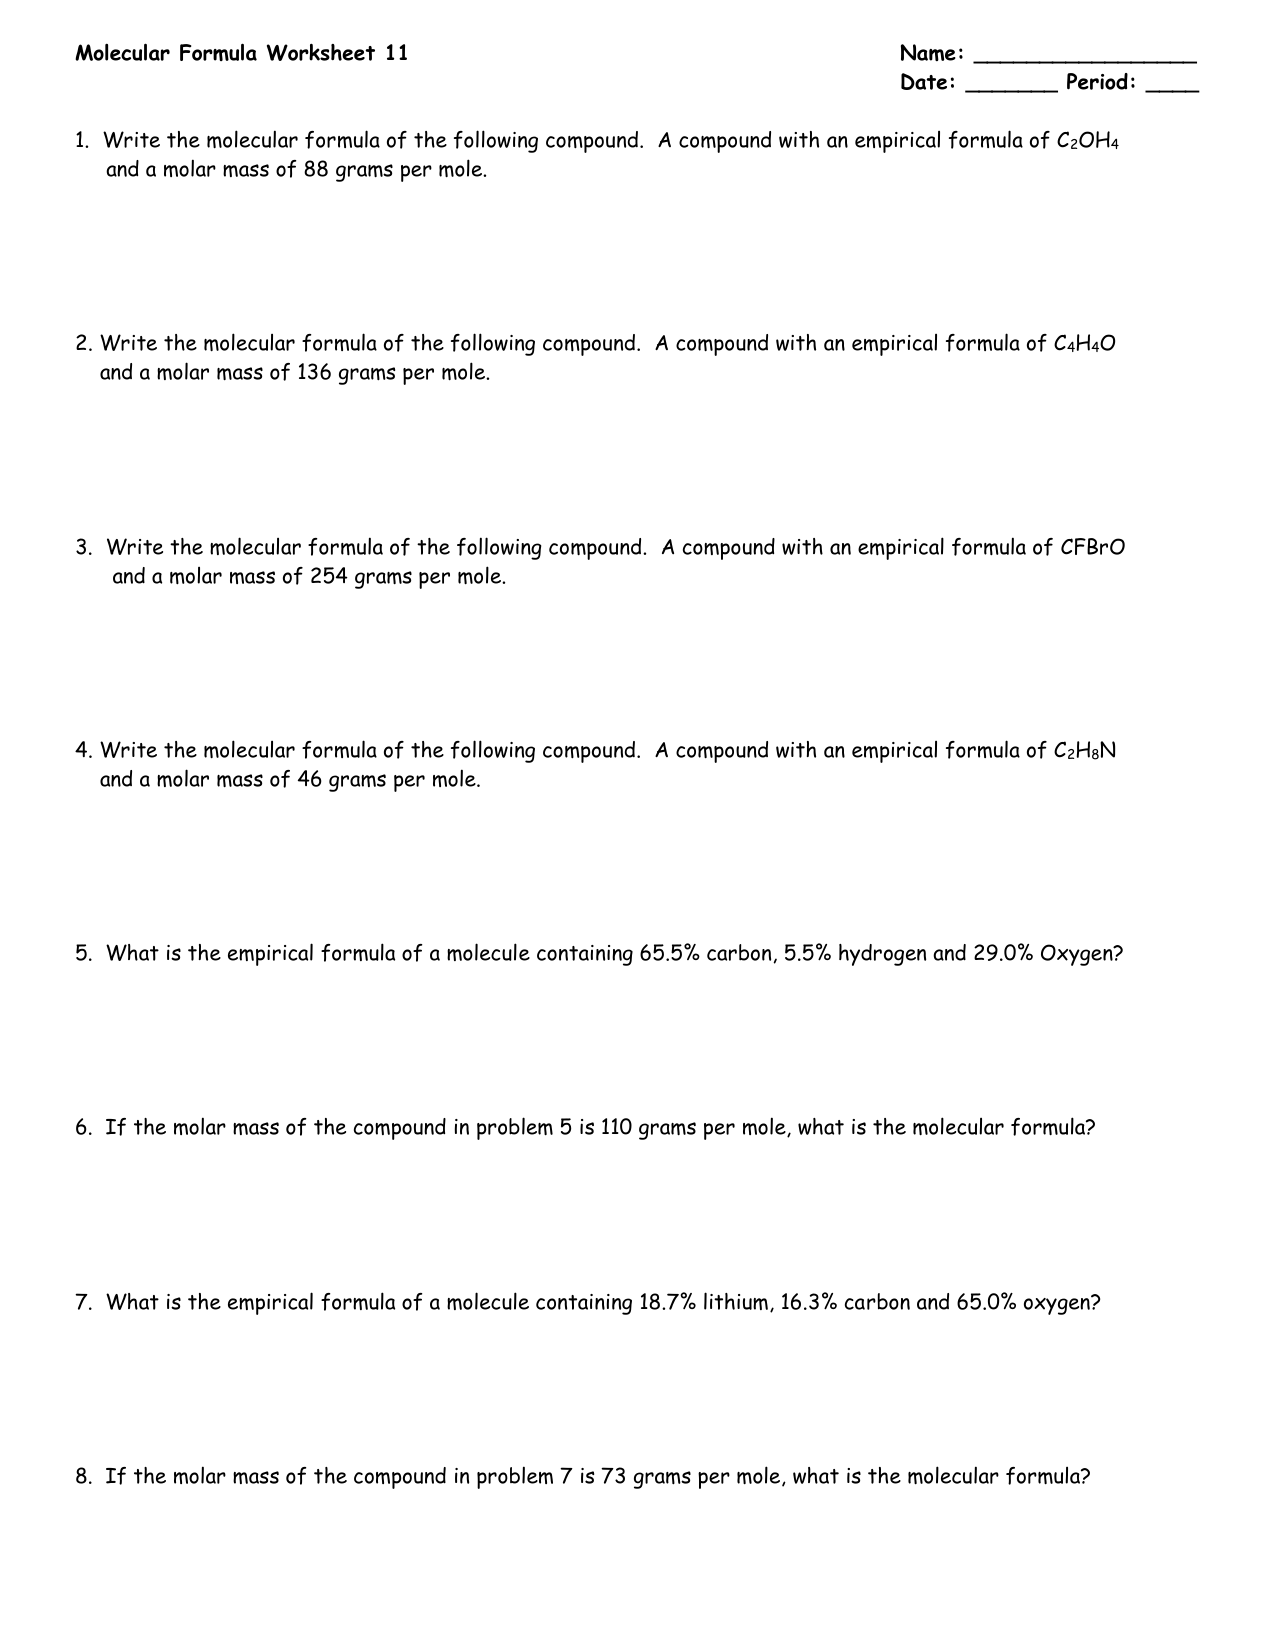 Molecular Formula Worksheet #22 For Chemical Formula Worksheet Answers